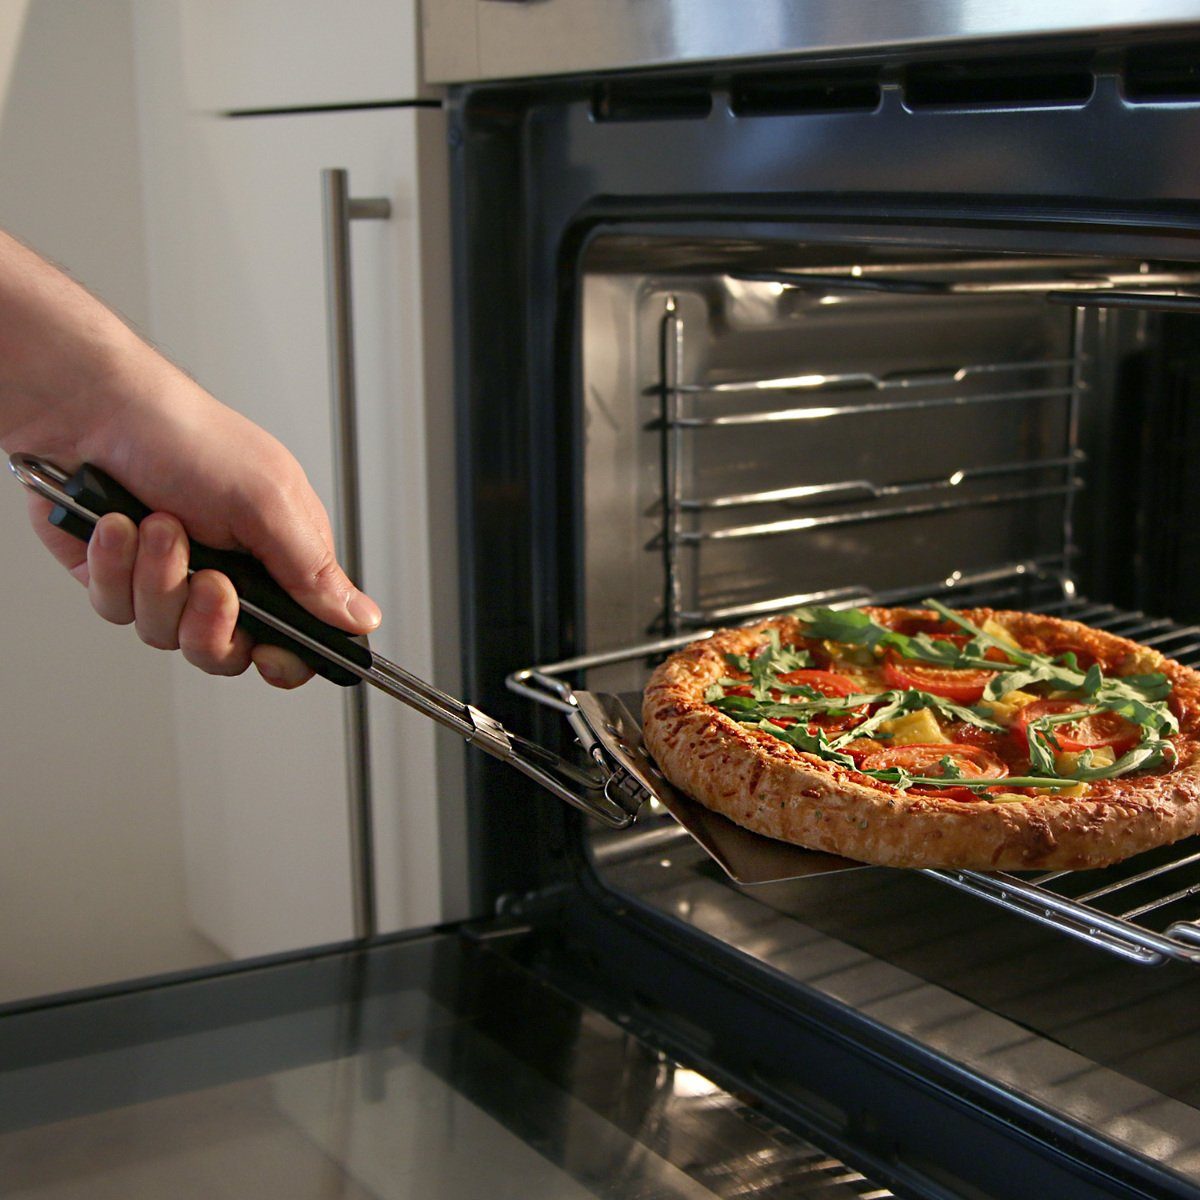 Navaris Backschaufeln Faltbare für Grill auch Pizzaschaufel 46x18 Edelstahl, cm, aus